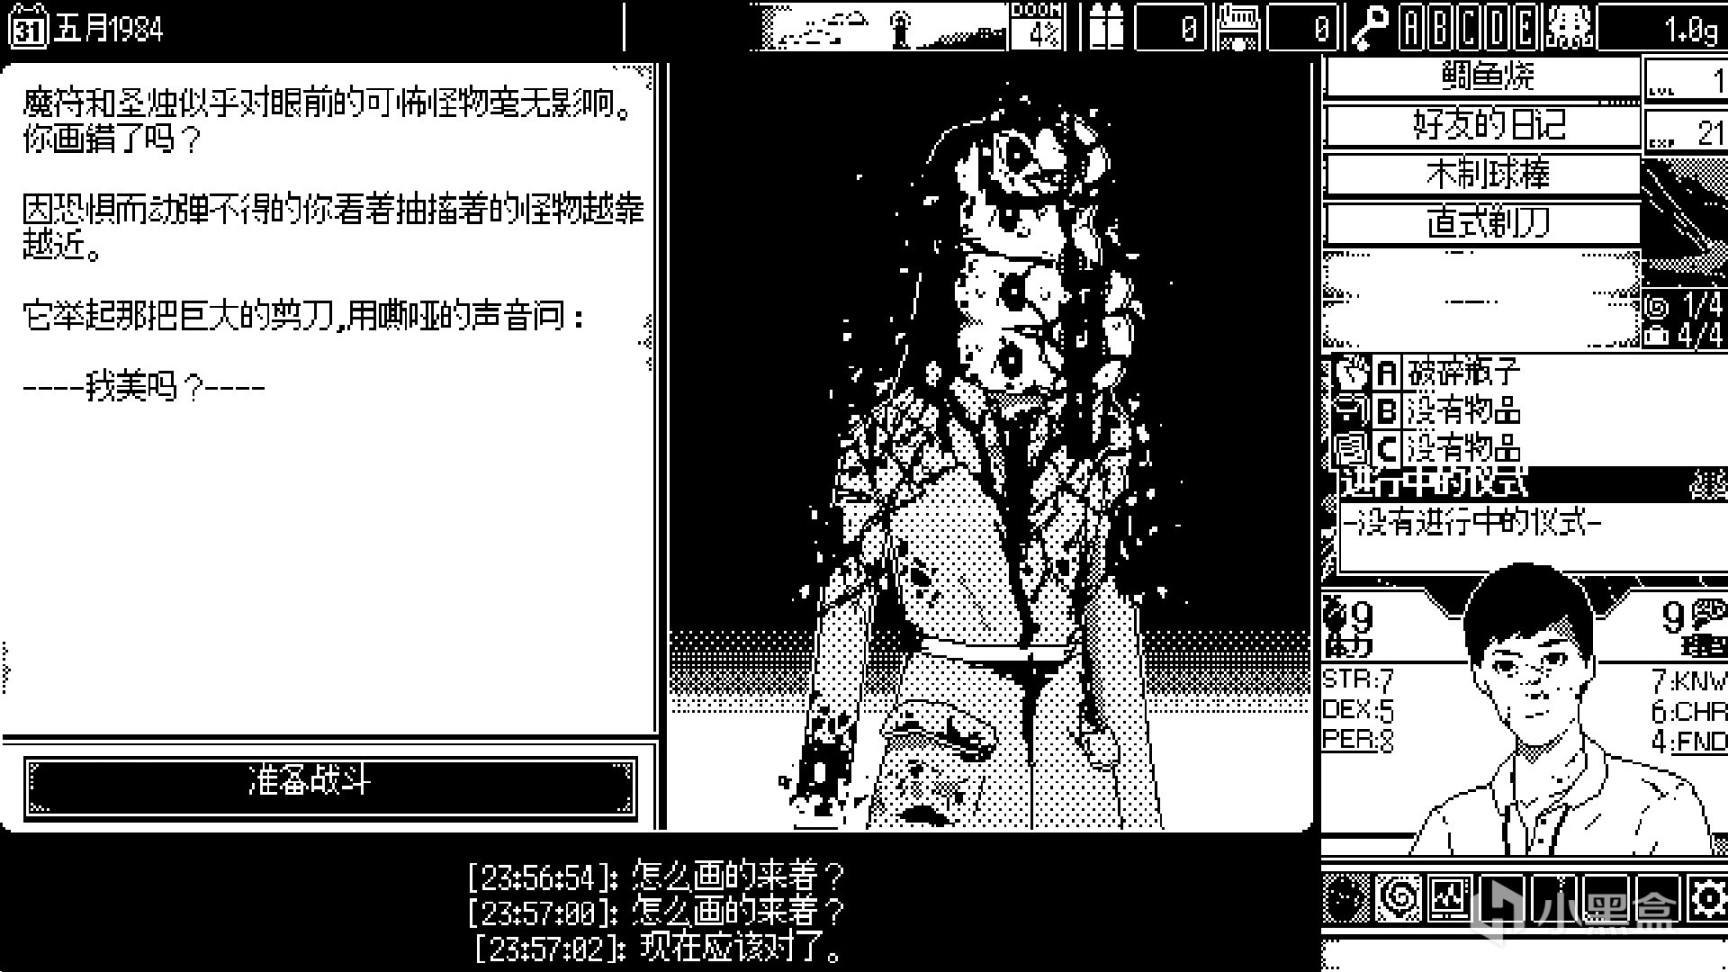 【PC遊戲】伊藤潤二+克蘇魯，這款黑白畫風的遊戲讓我SAN值狂掉-第7張